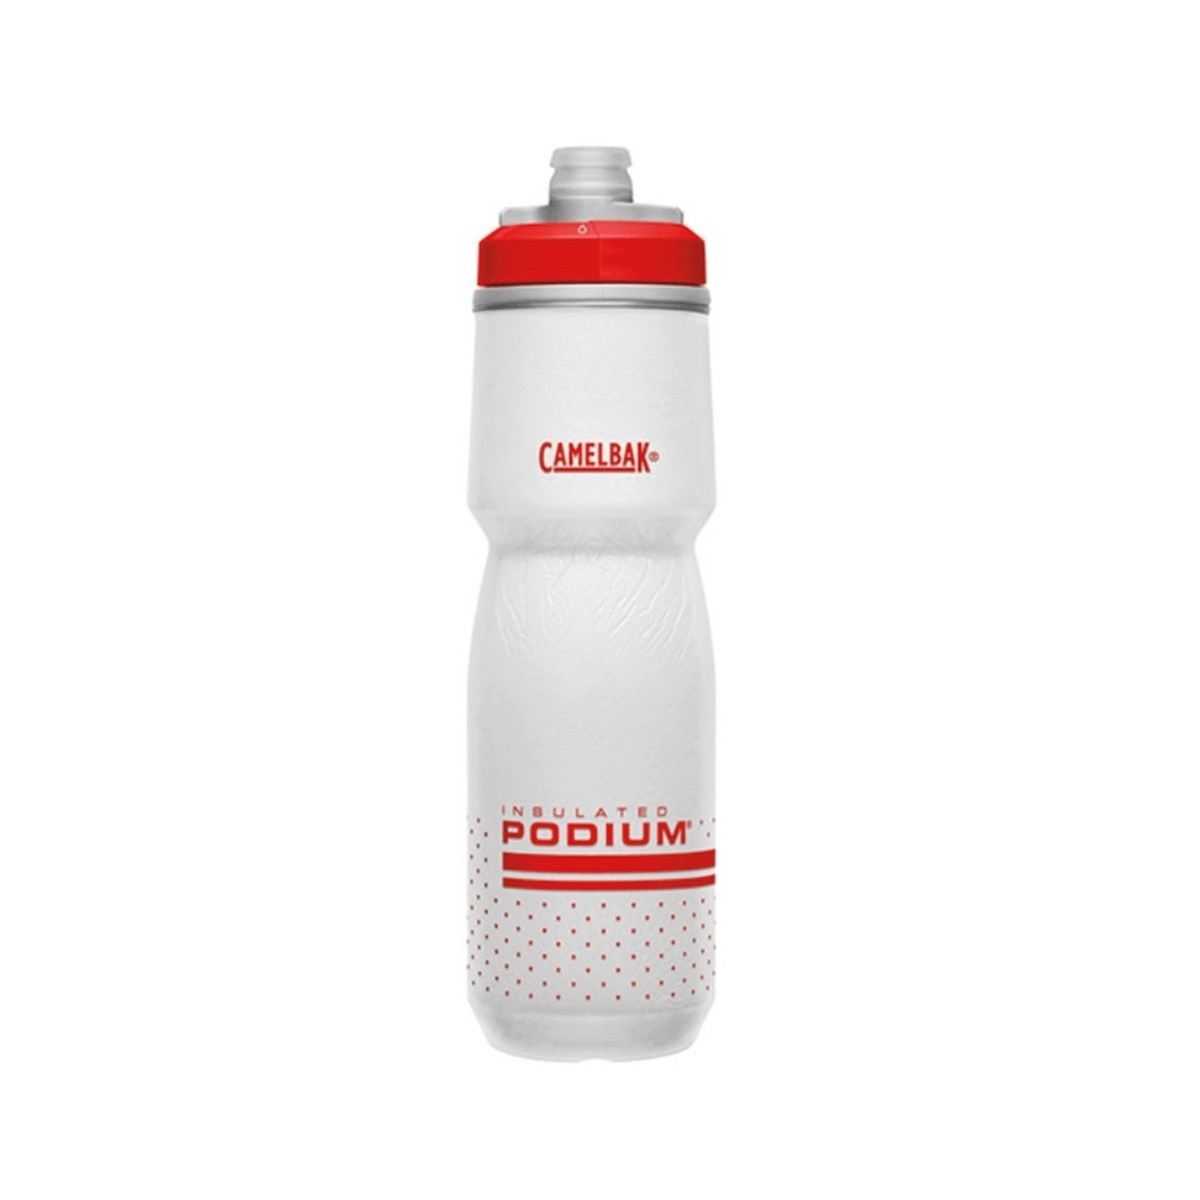 Camelbak Podium Chill Bottle 0.7L Red White